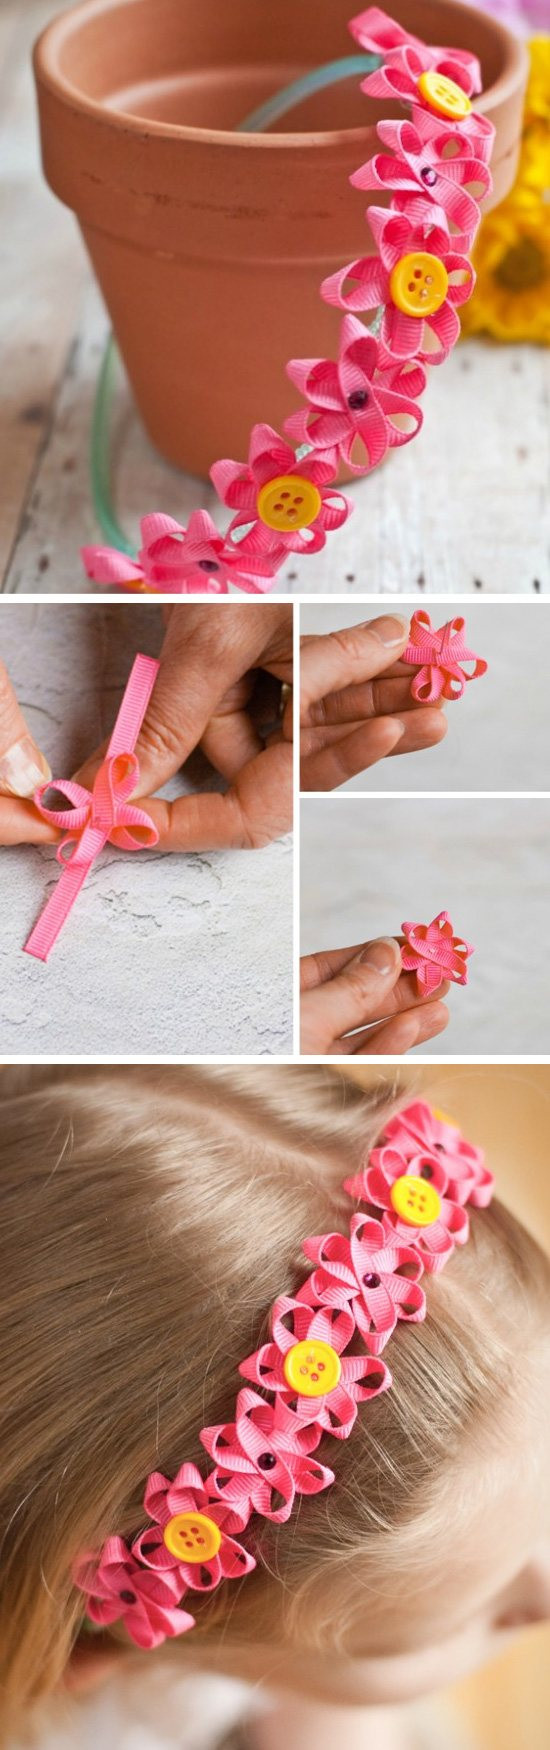 DIY Crafts For Toddlers
 30 Creative DIY Spring Crafts for Kids Sponge Kids